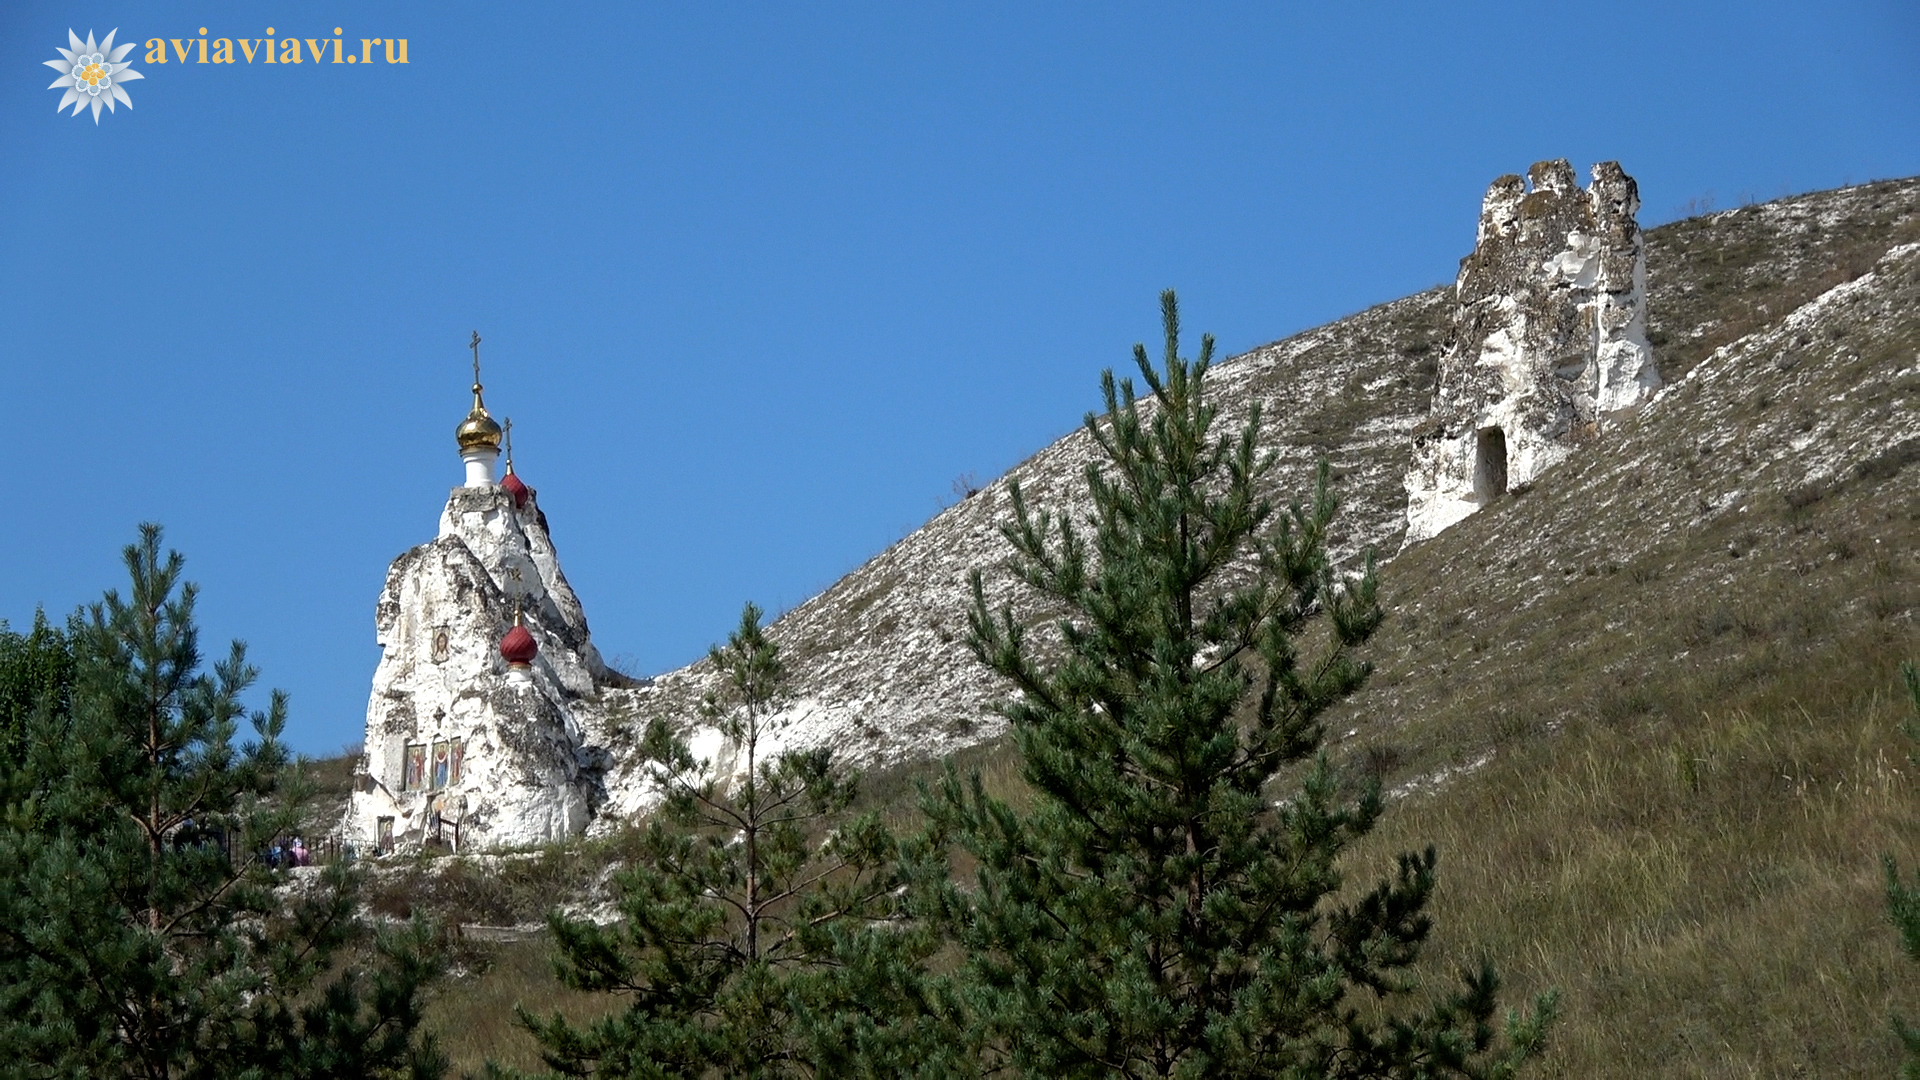 ТКостомаровский монастырь